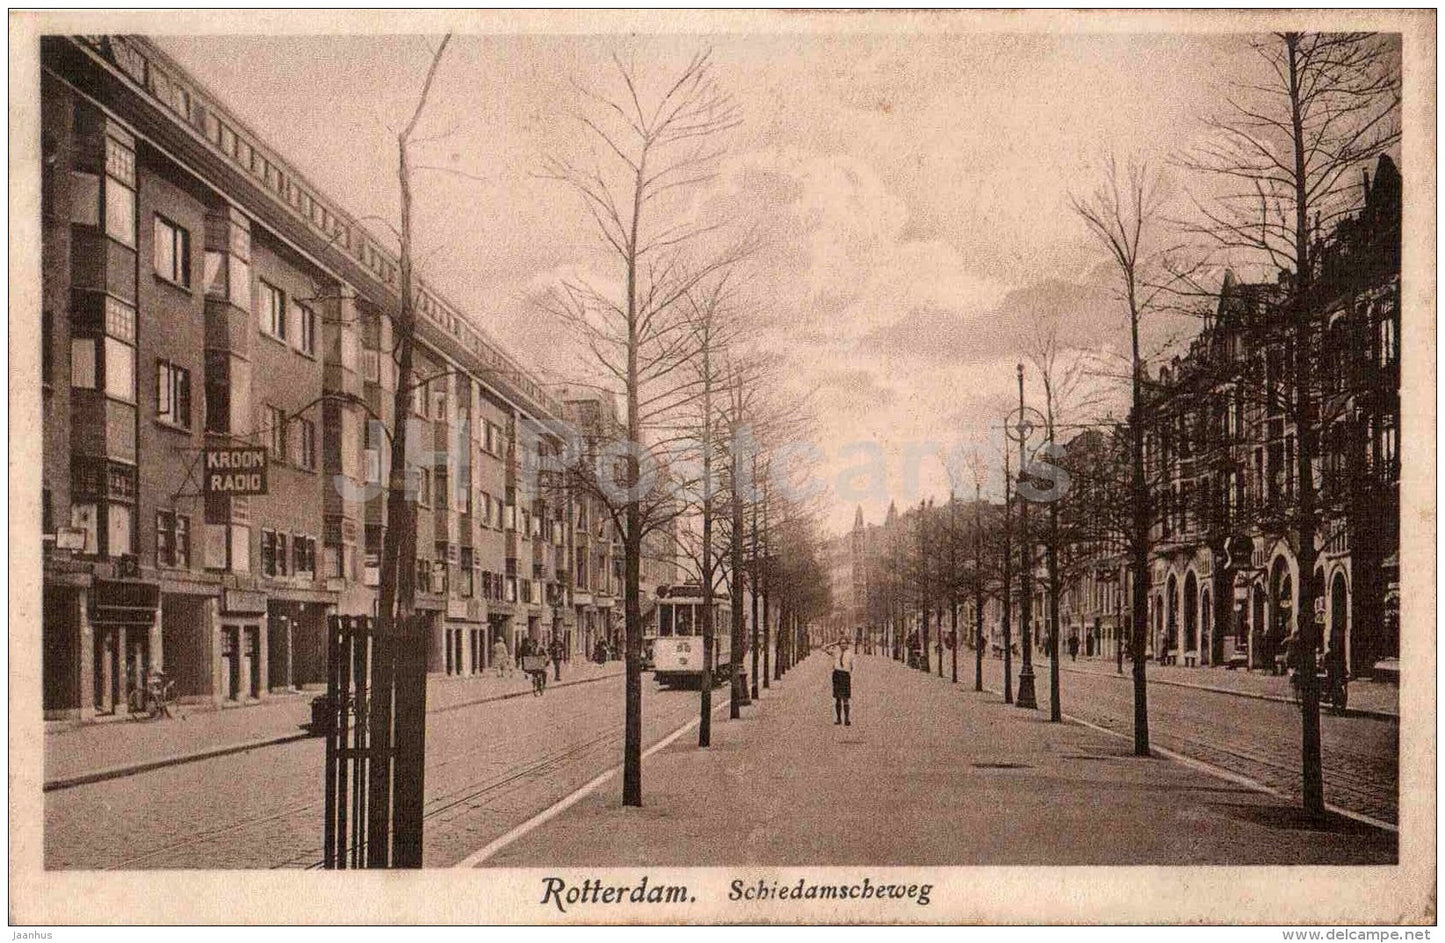 Schiedamscheweg - Rotterdam - tram - Netherlands - 1371 - old postcard - unused - JH Postcards